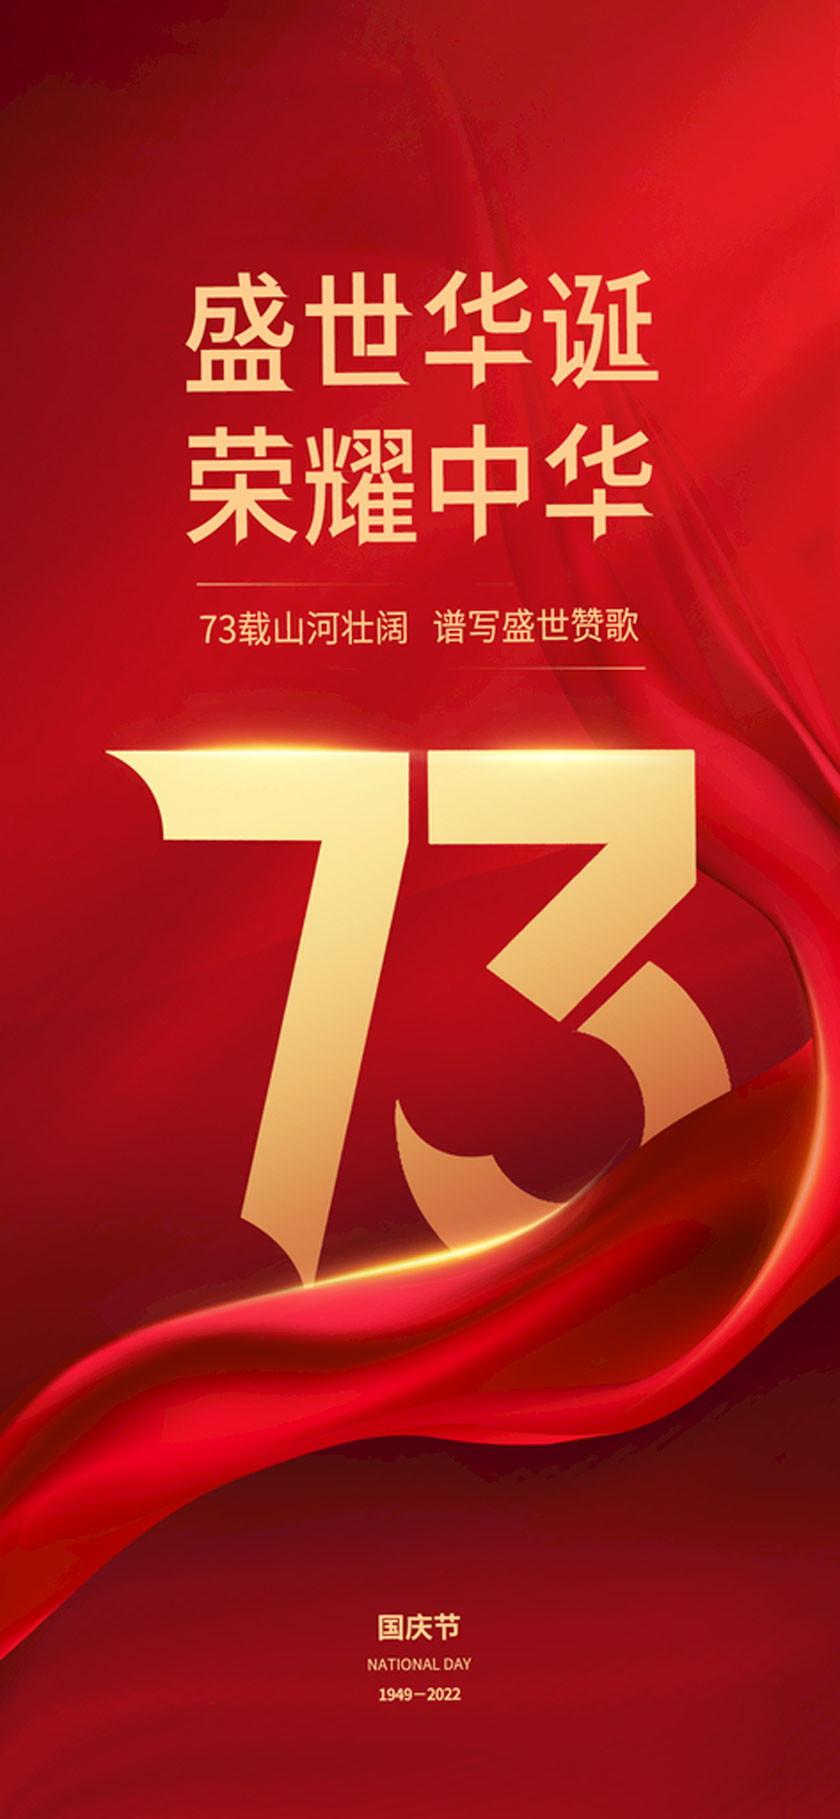 盛世华诞荣耀中华国庆节海报设计PSD素材